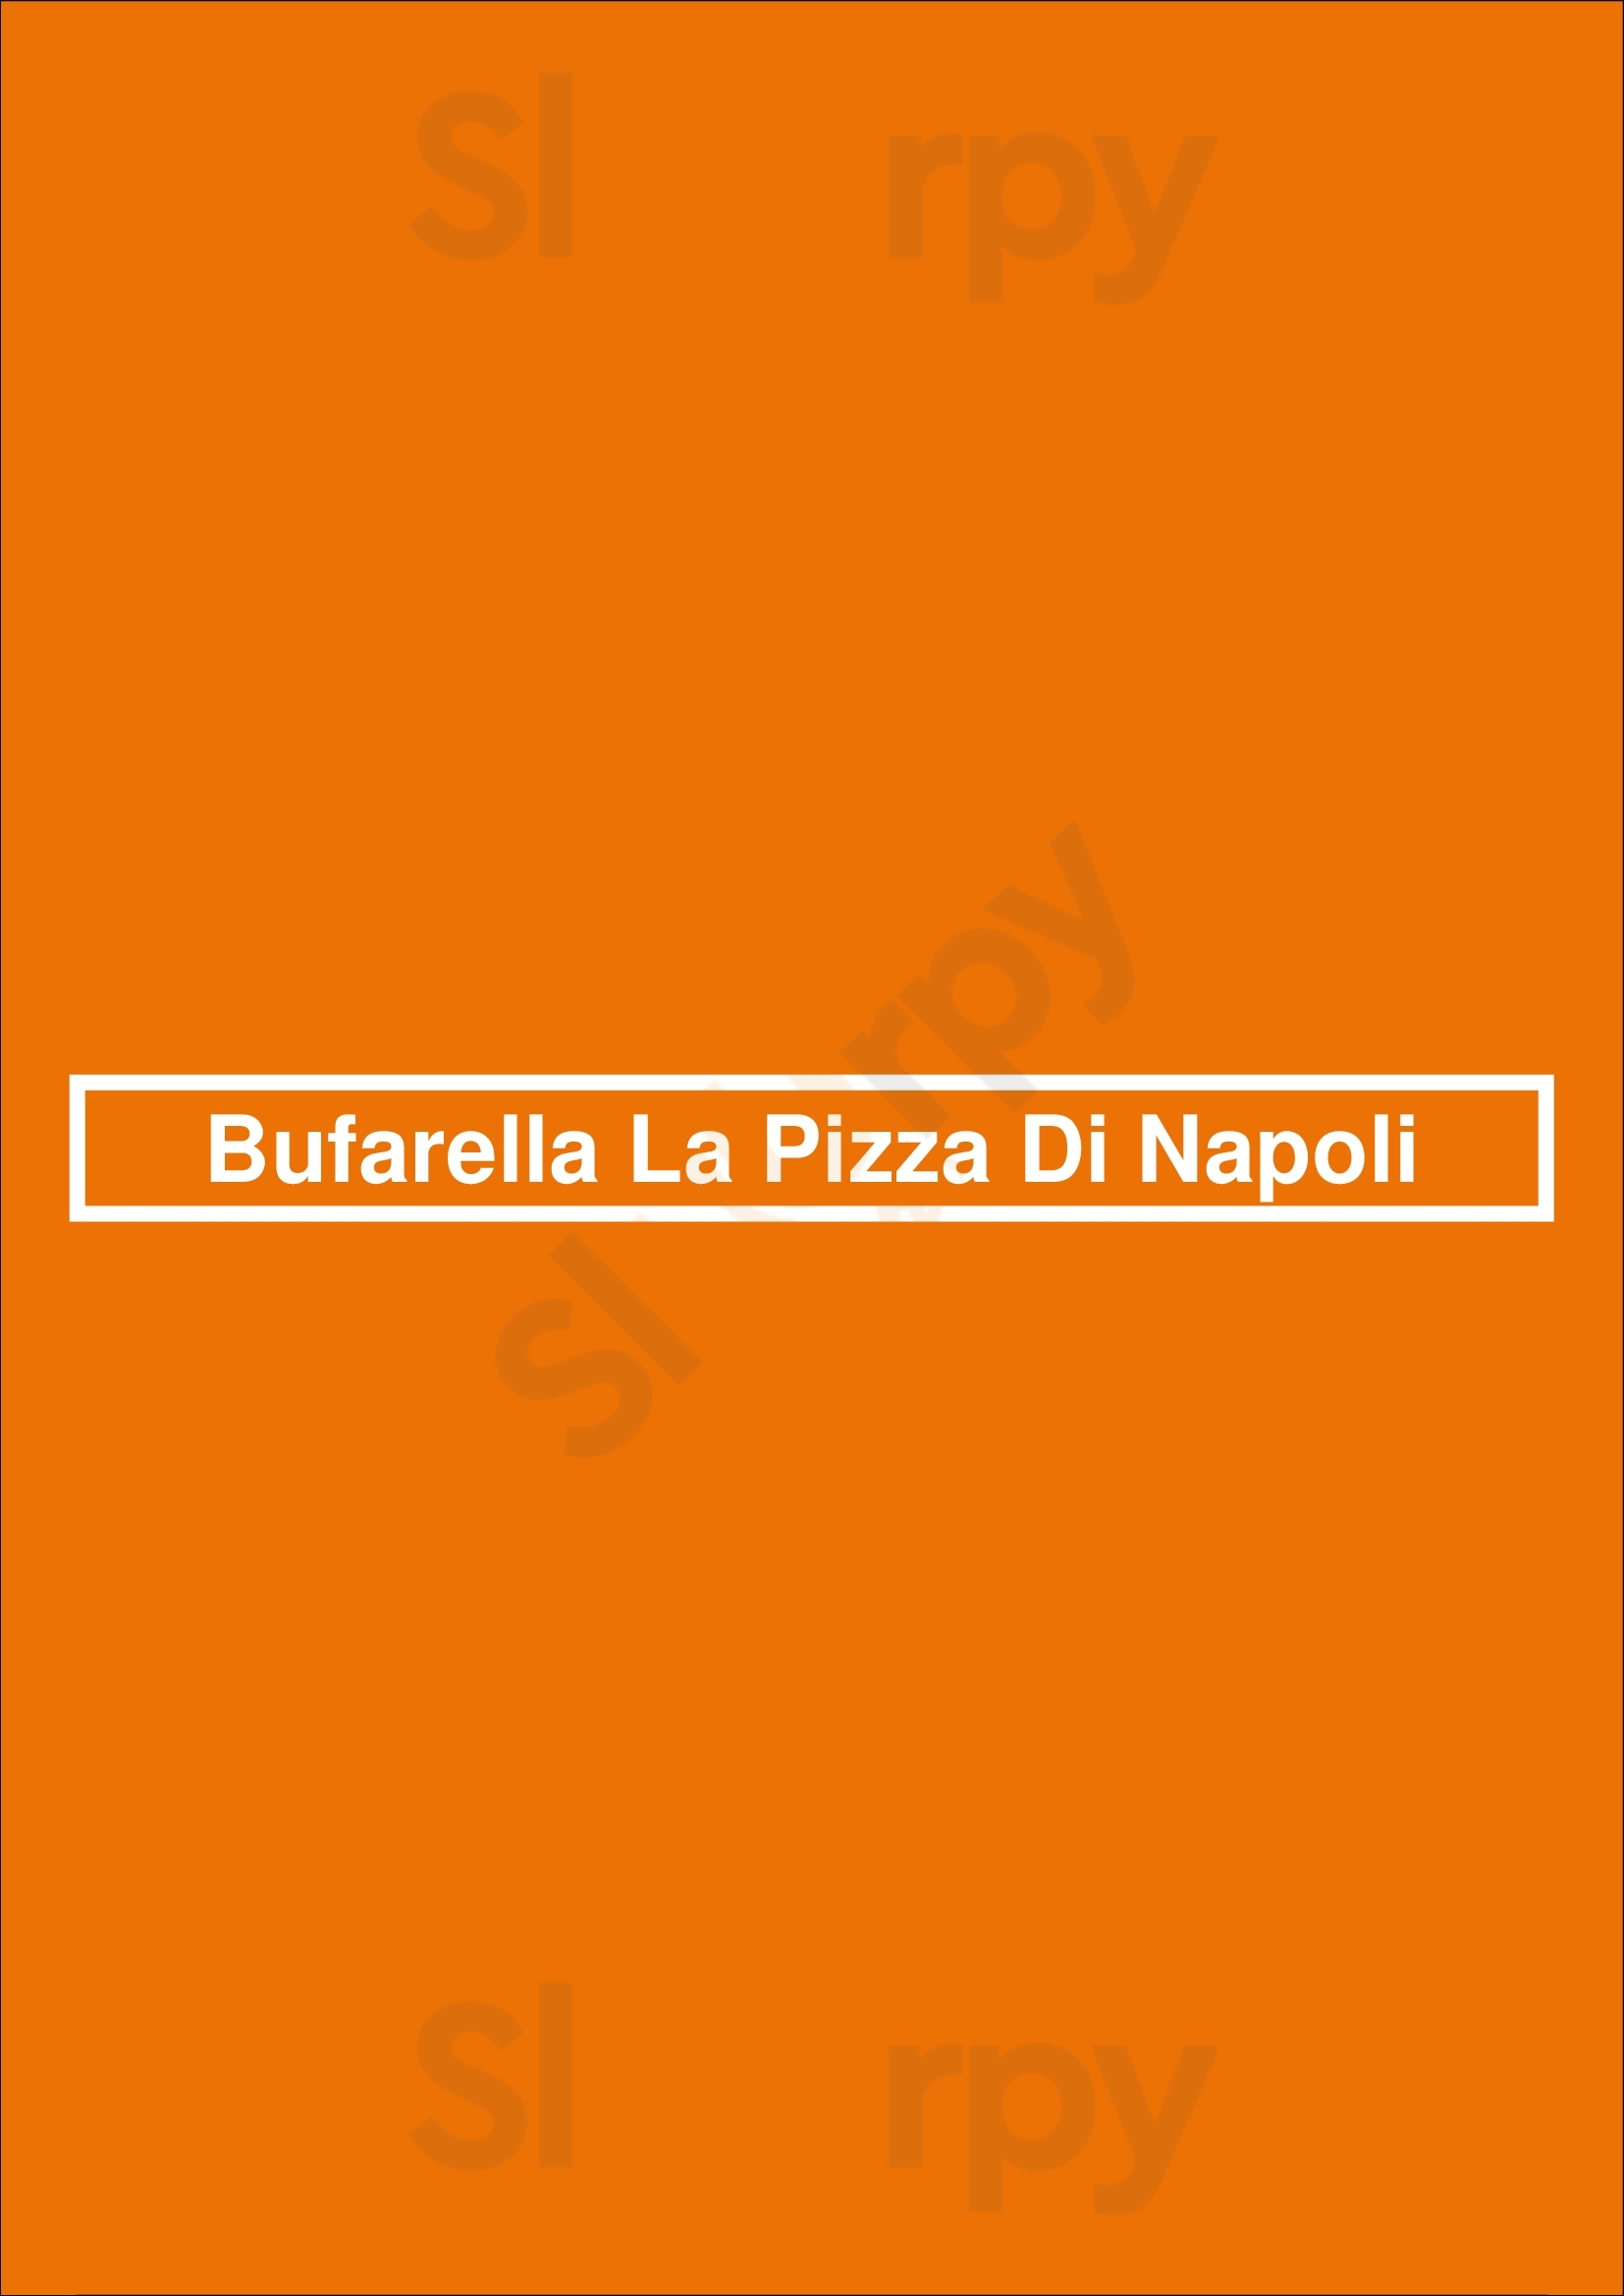 Bufarella La Pizza Di Napoli Fort Lauderdale Menu - 1